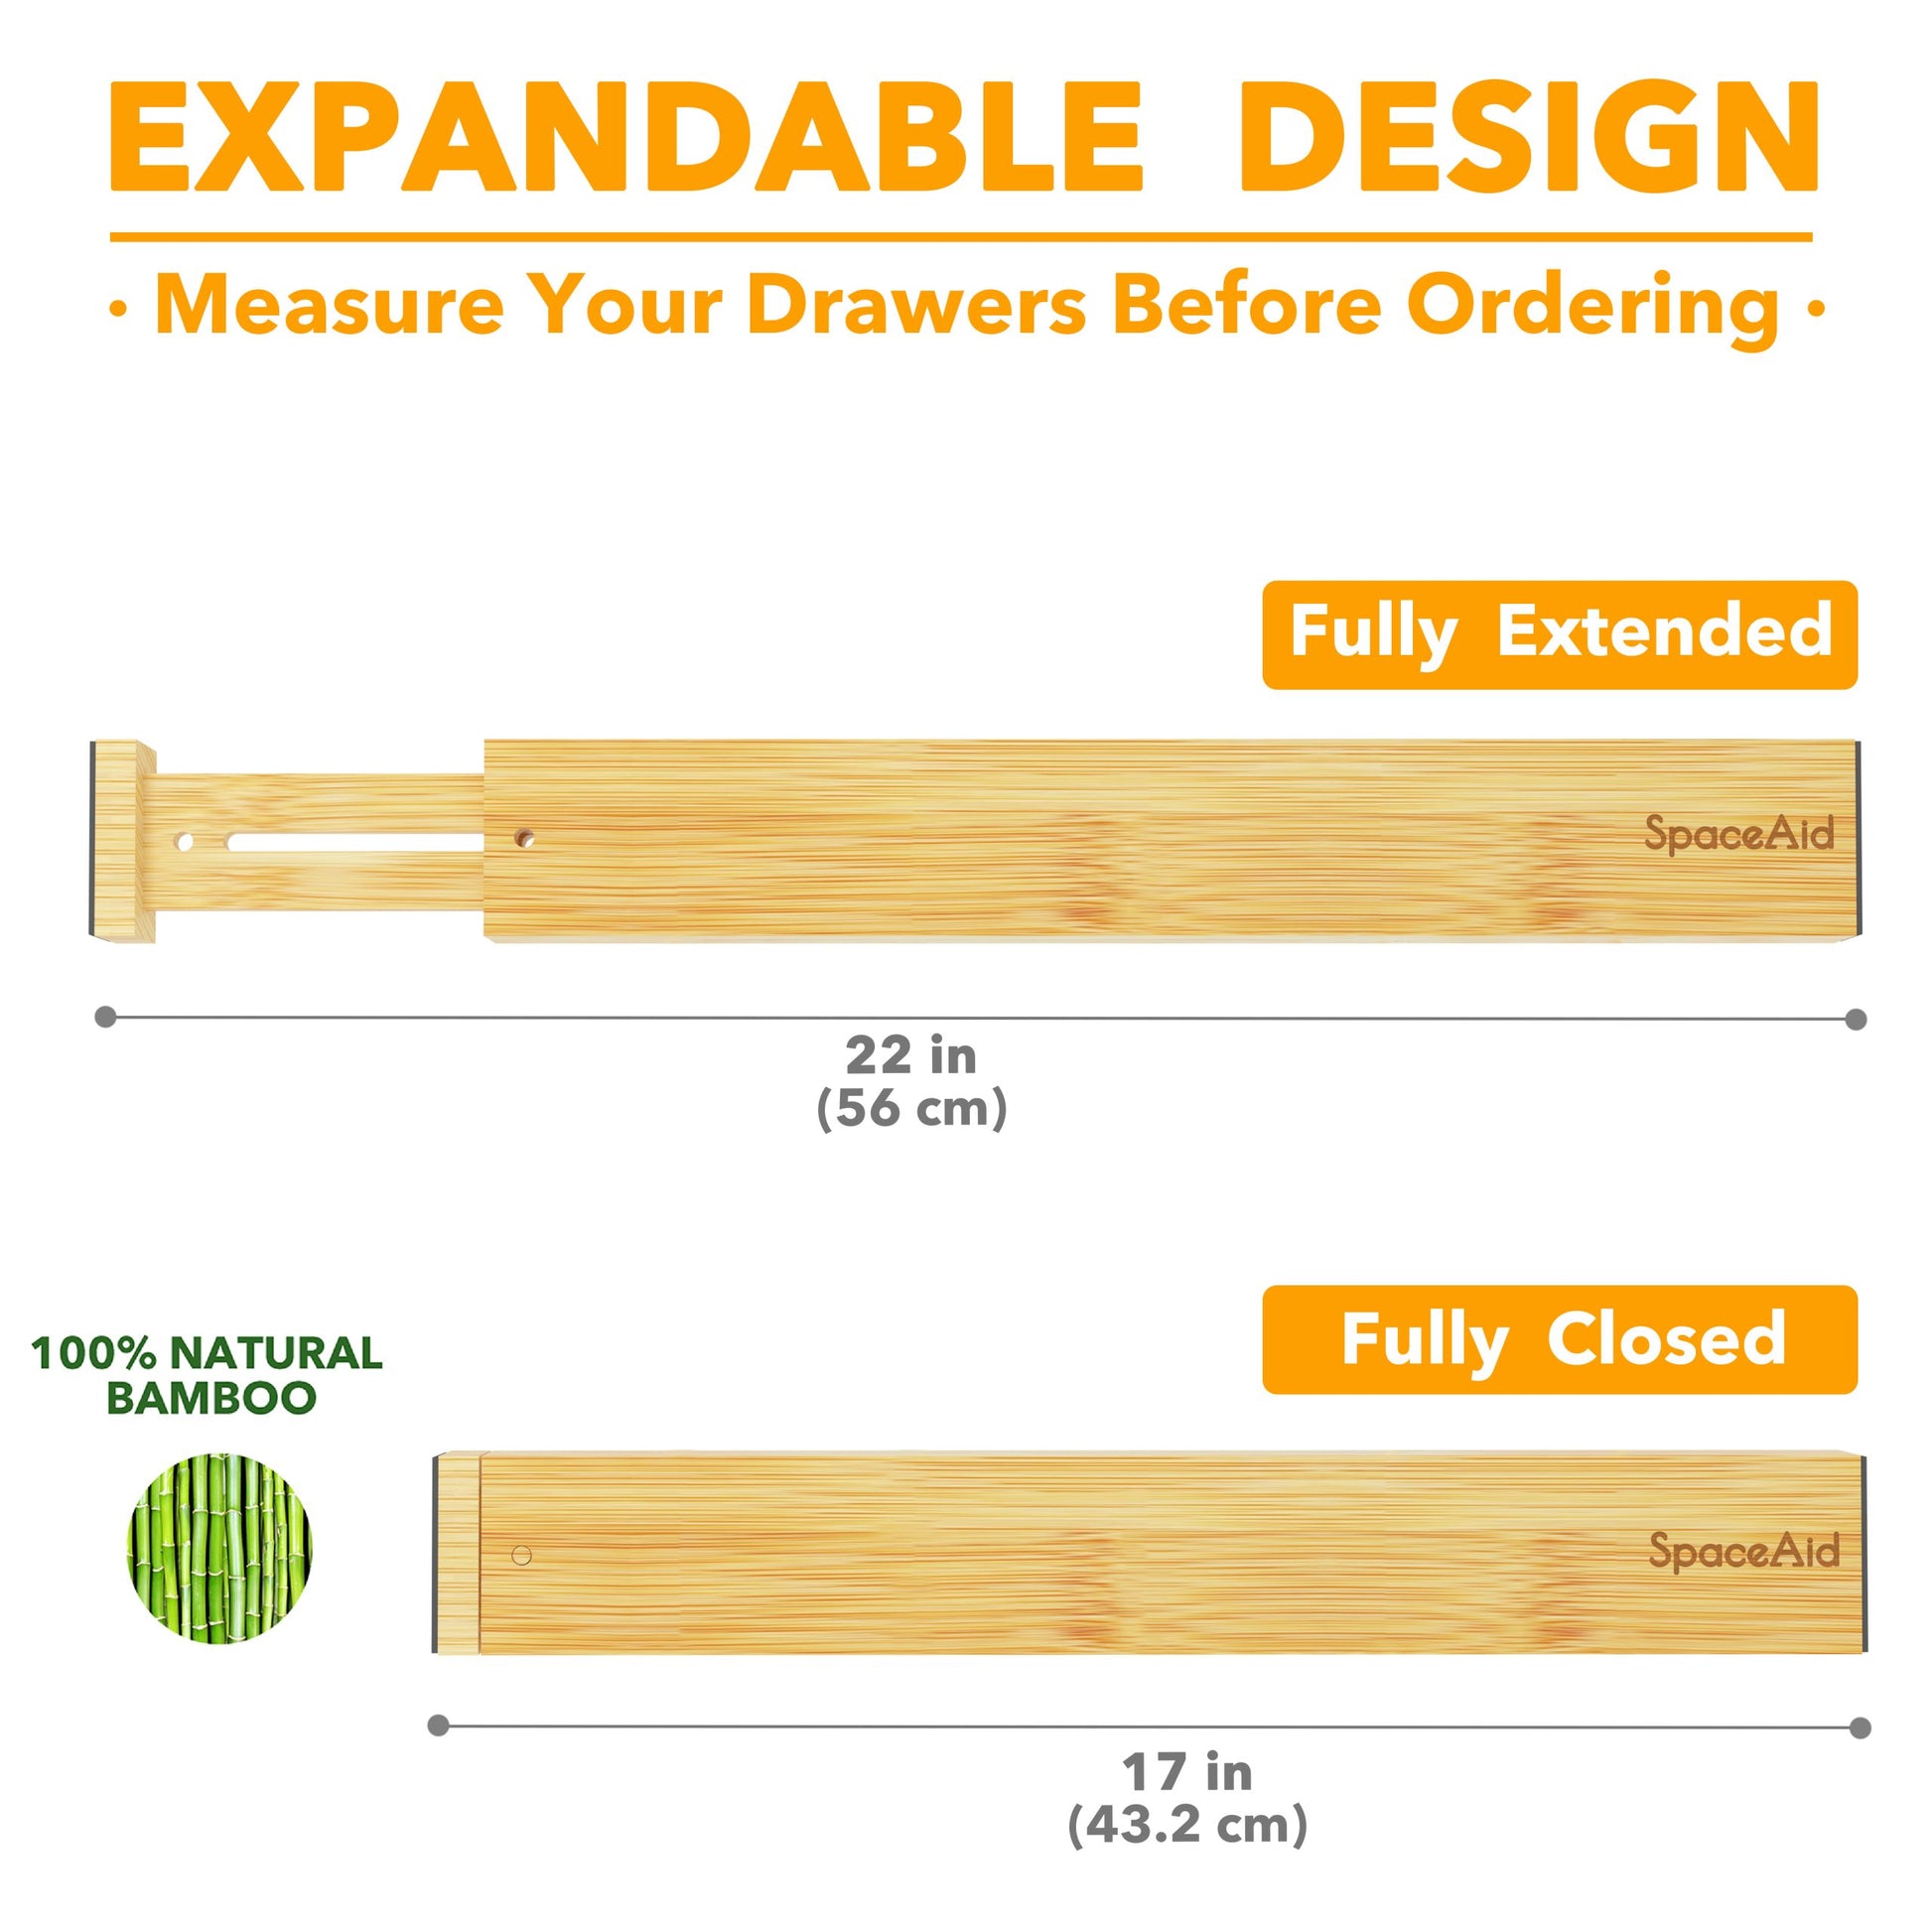 Bamboo Drawer Organizer